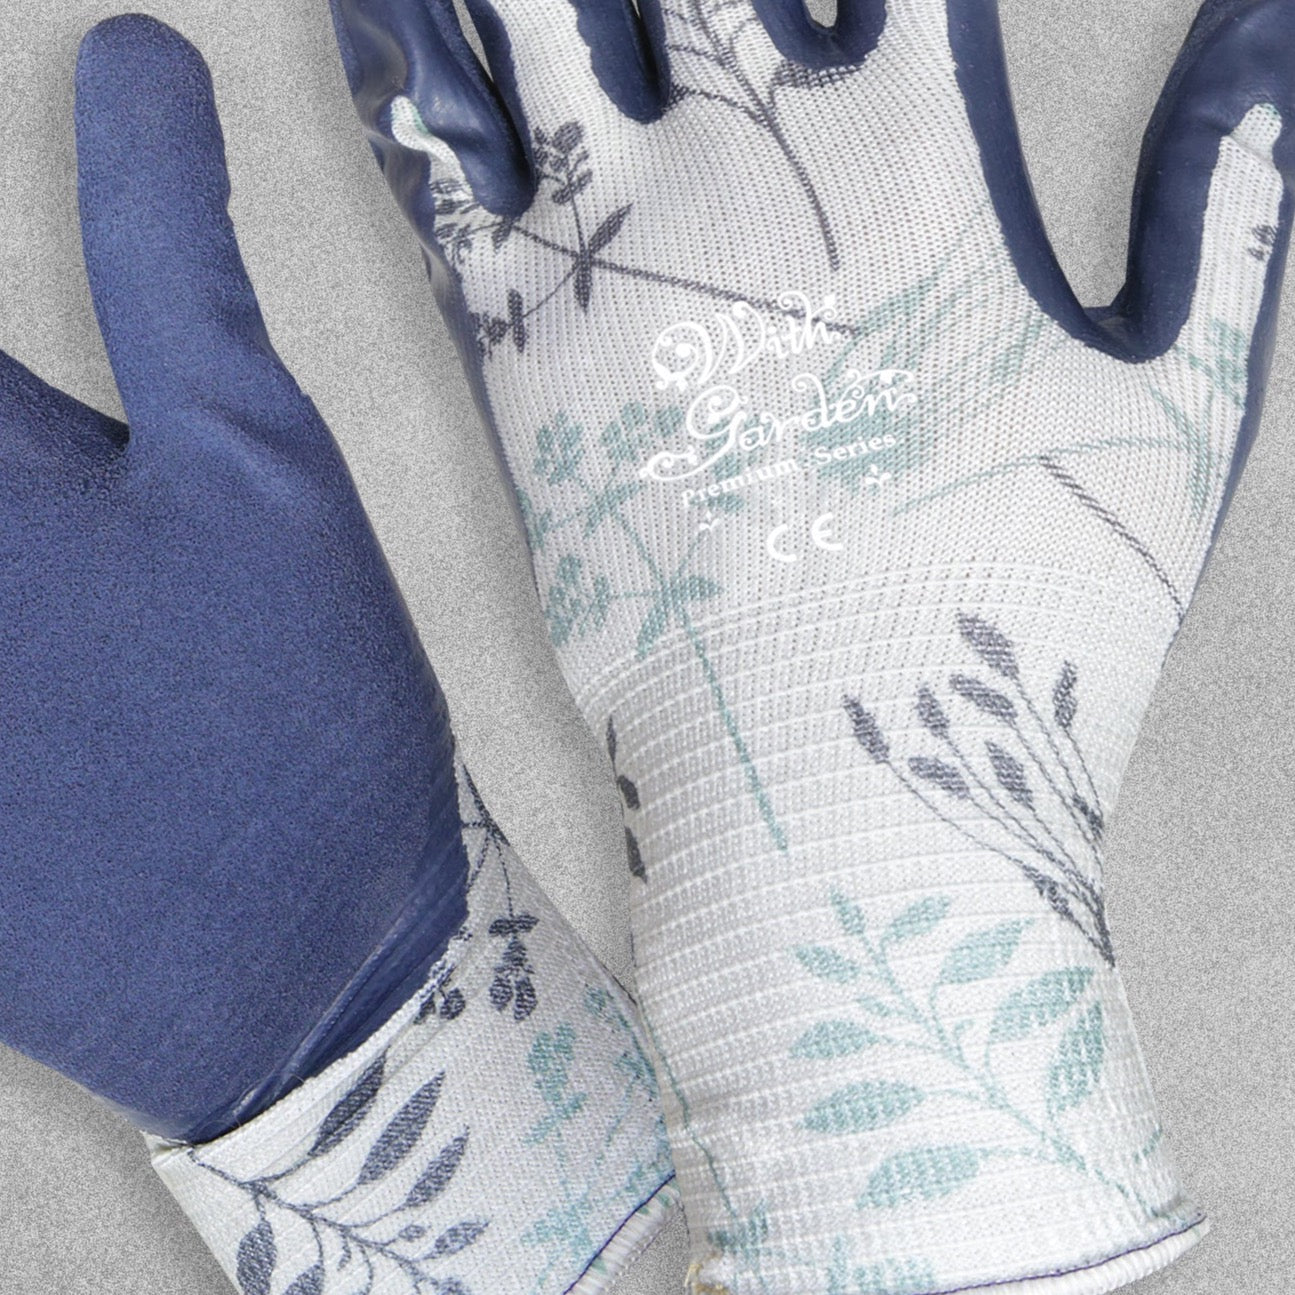 With Garden Premium Luminus Garden gloves - Herb design